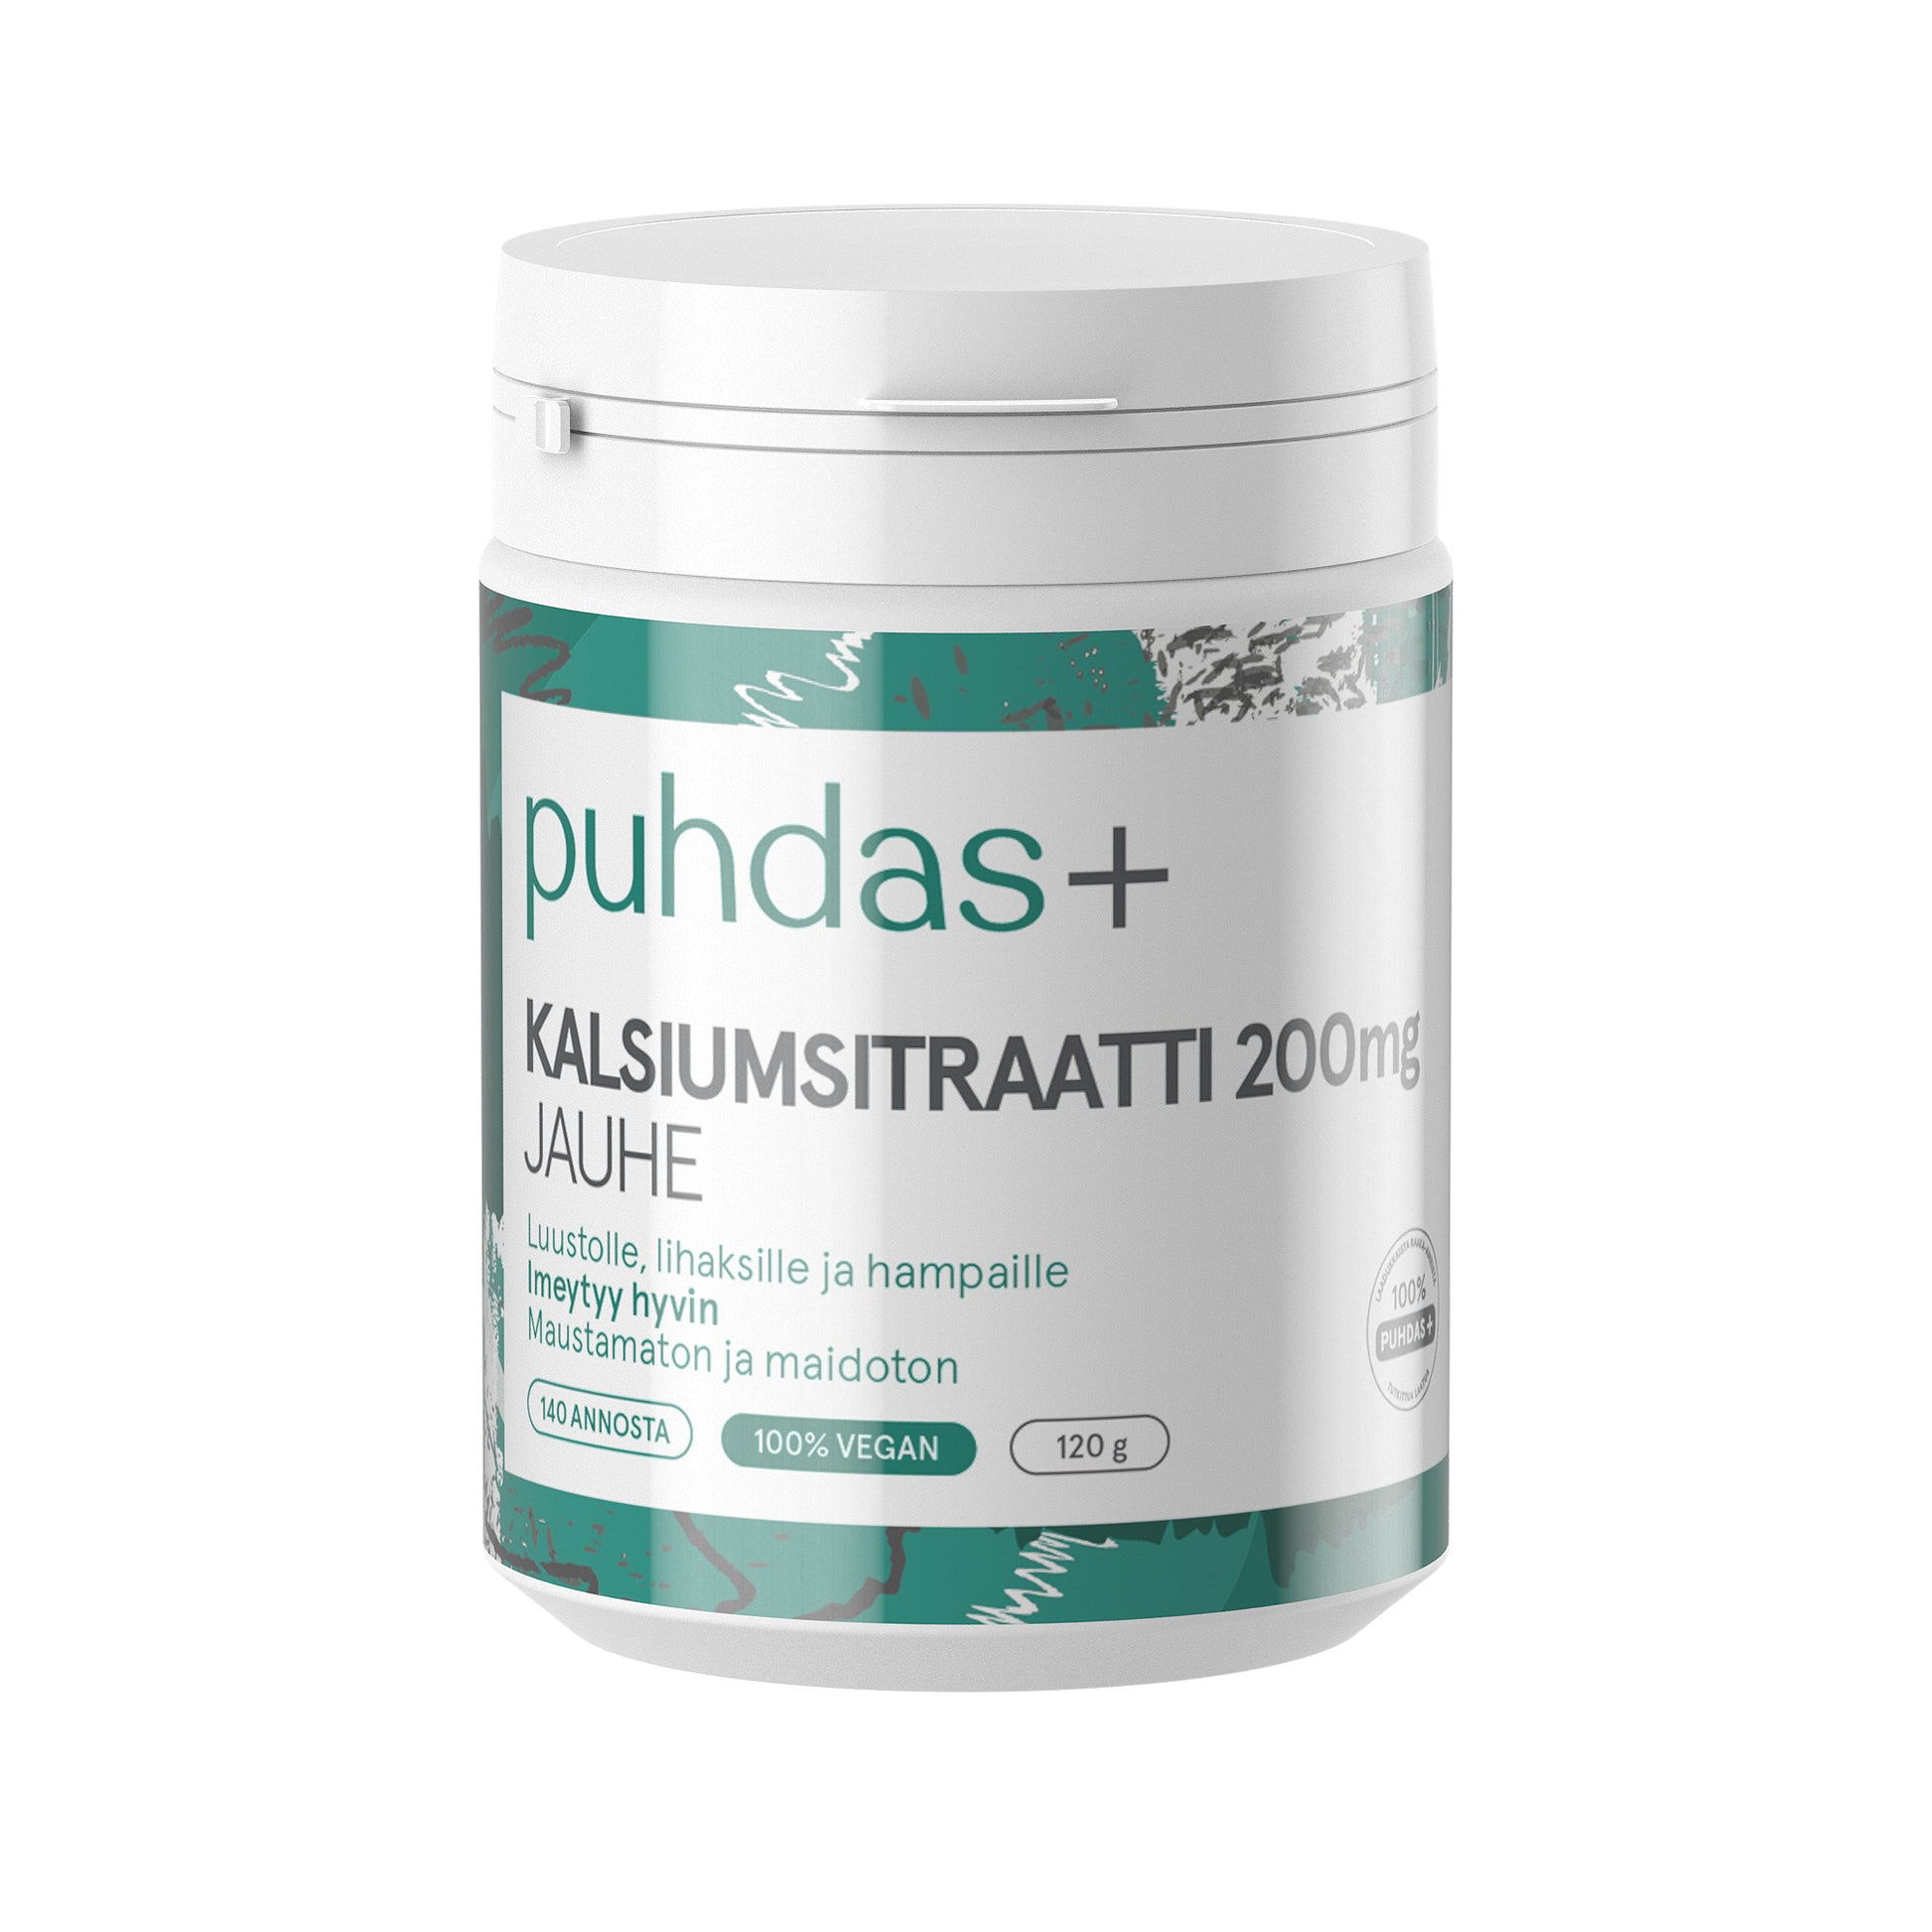 PUHDAS+ Kalsiumsitraatti 200 mg jauhe 120 g